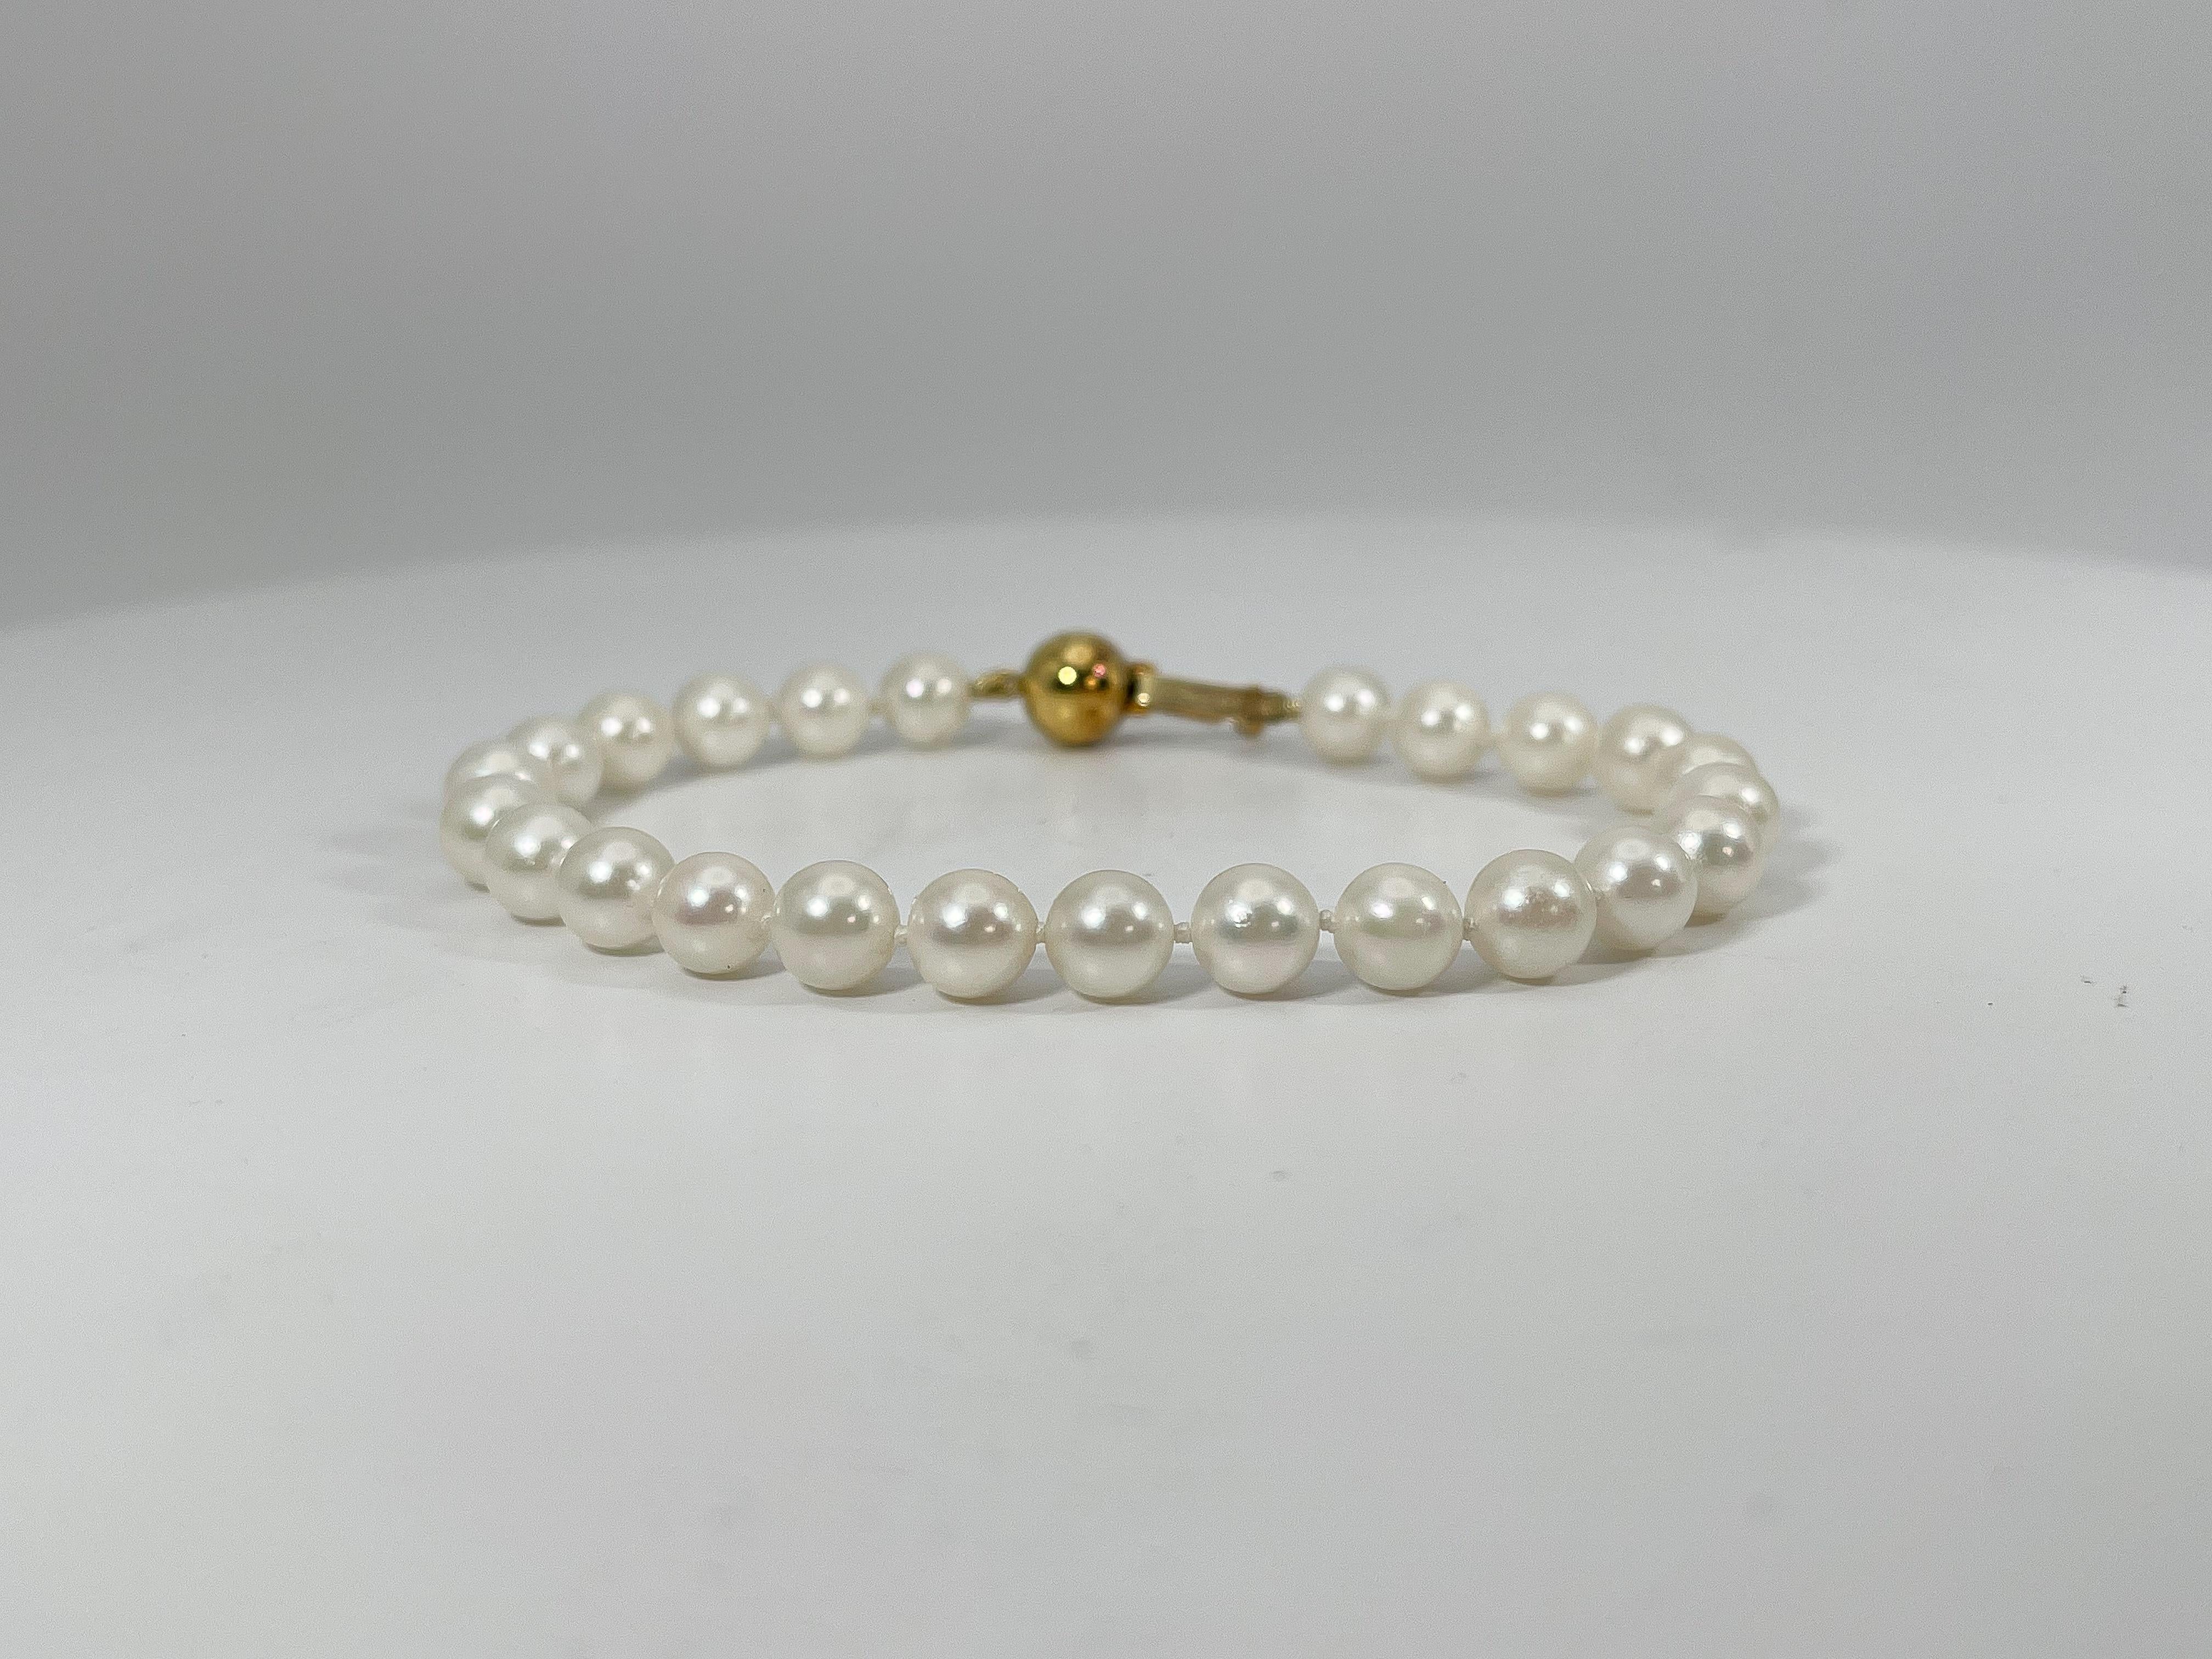 Bracelet de perles blanches en or jaune 14k. Ce bracelet est doté d'un fermoir en perles qui s'ouvre et se ferme, sa longueur est de 7 pouces, sa largeur est de 6,5 mm et son poids total est de 11,2 grammes.